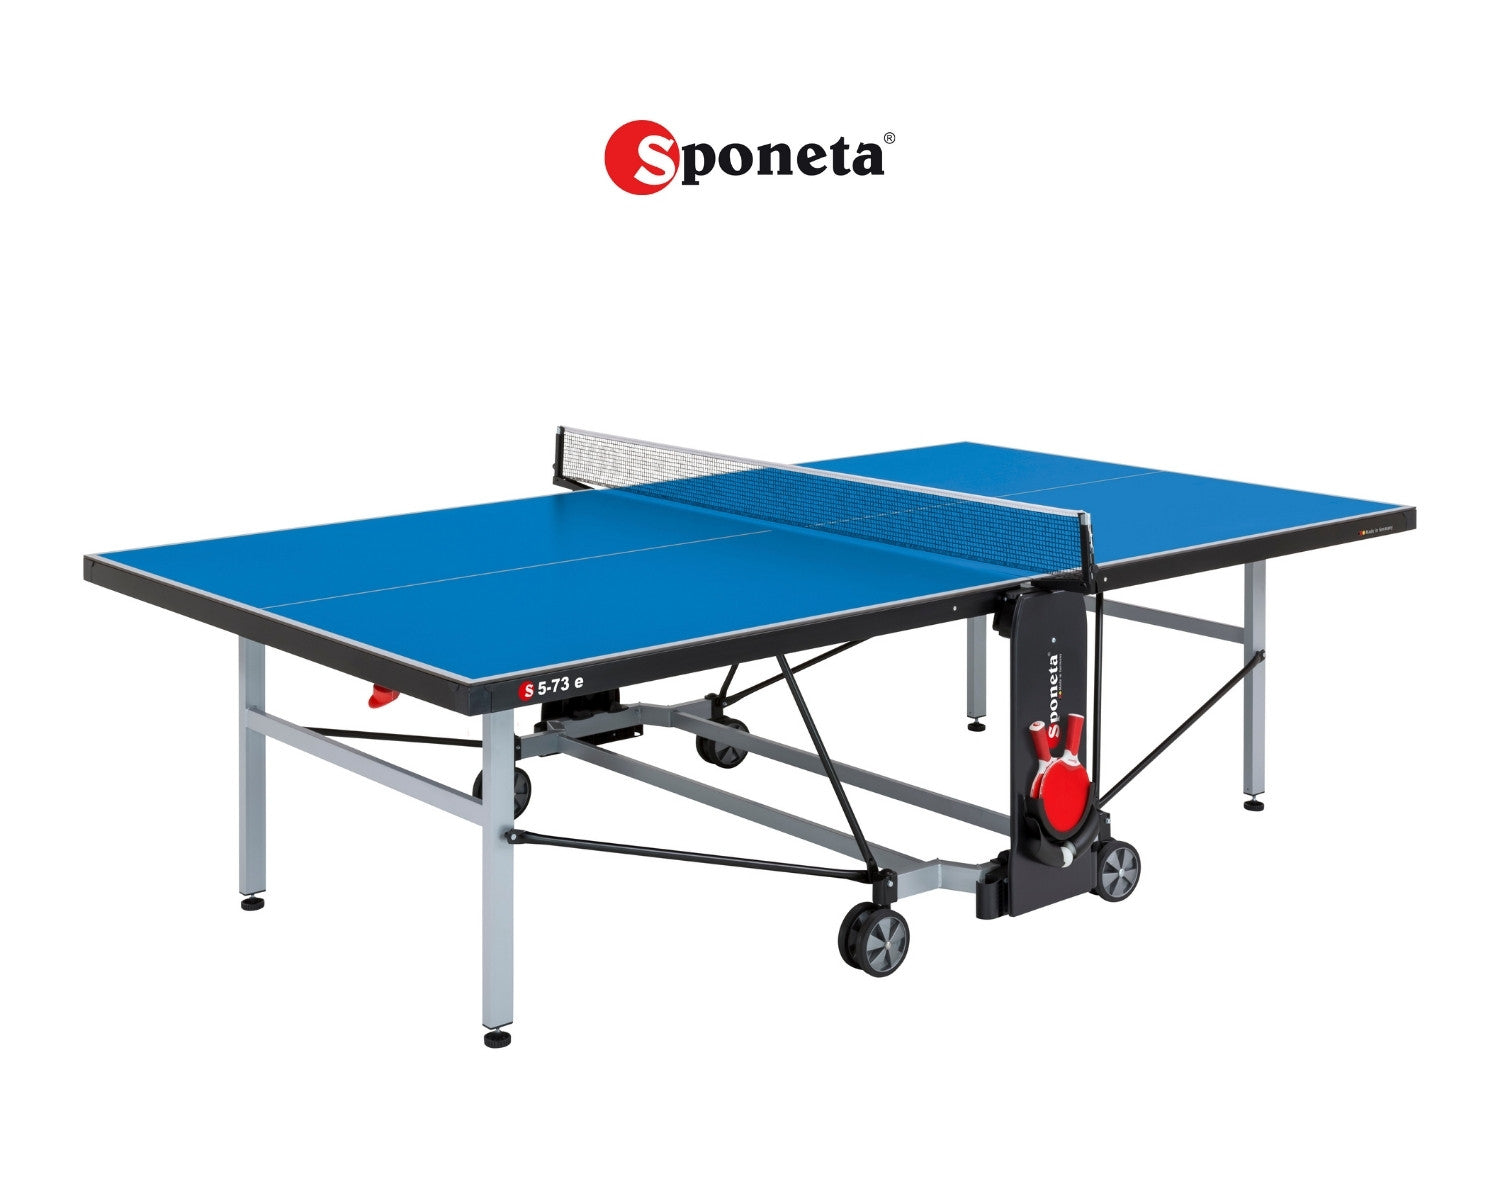 Sponeta Outdoor Tischtennistisch S 5-73 e